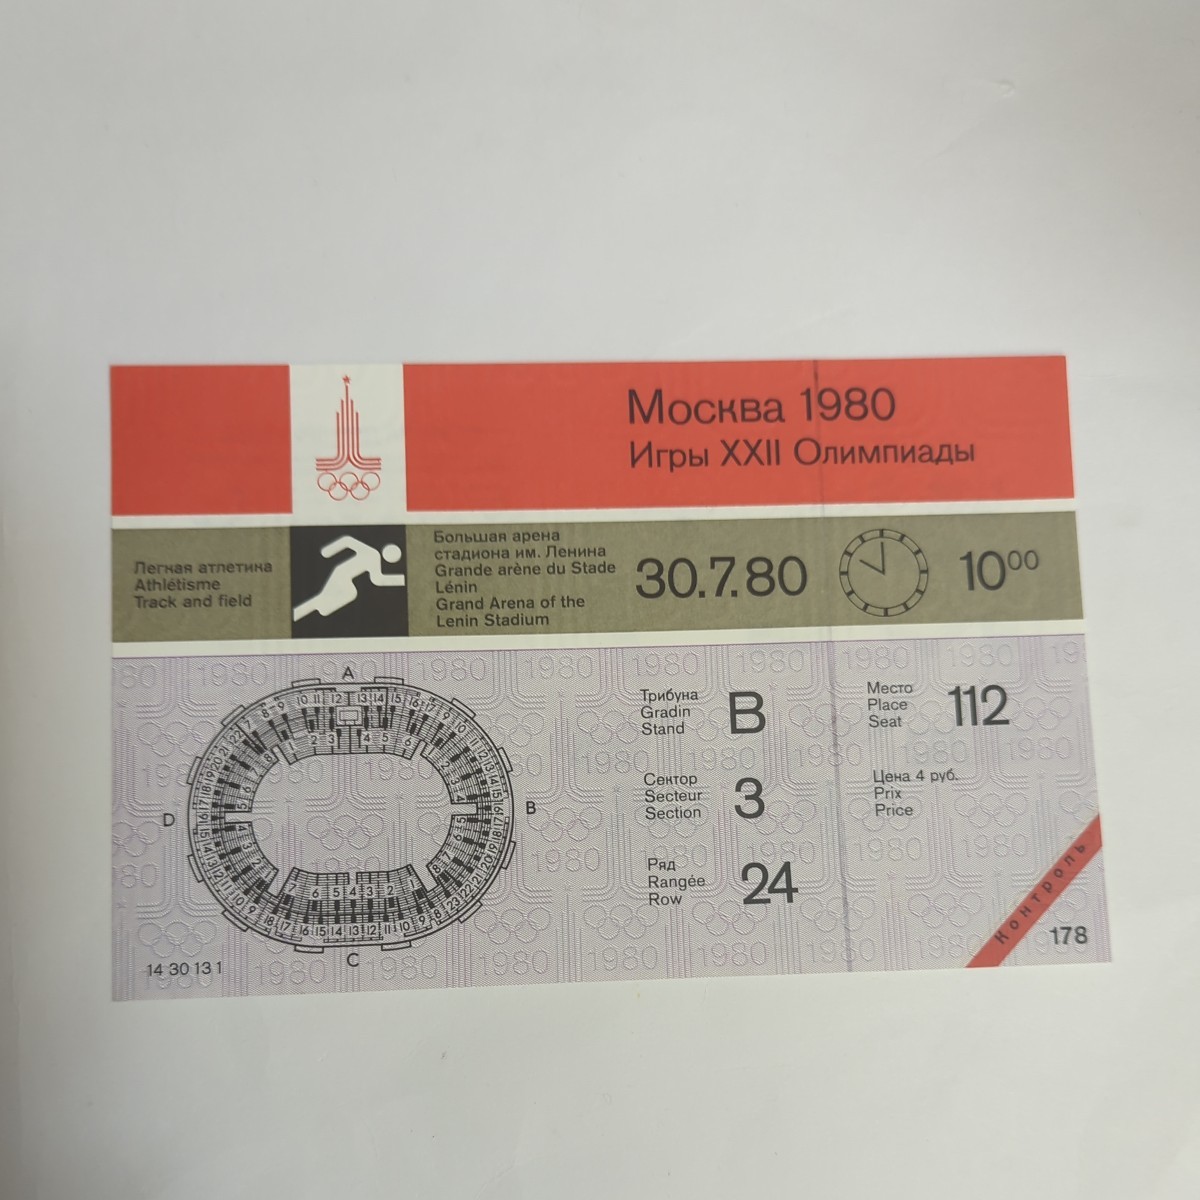 【希少】1980 モスクワ オリンピック 未使用 チケット 陸上 112_画像1